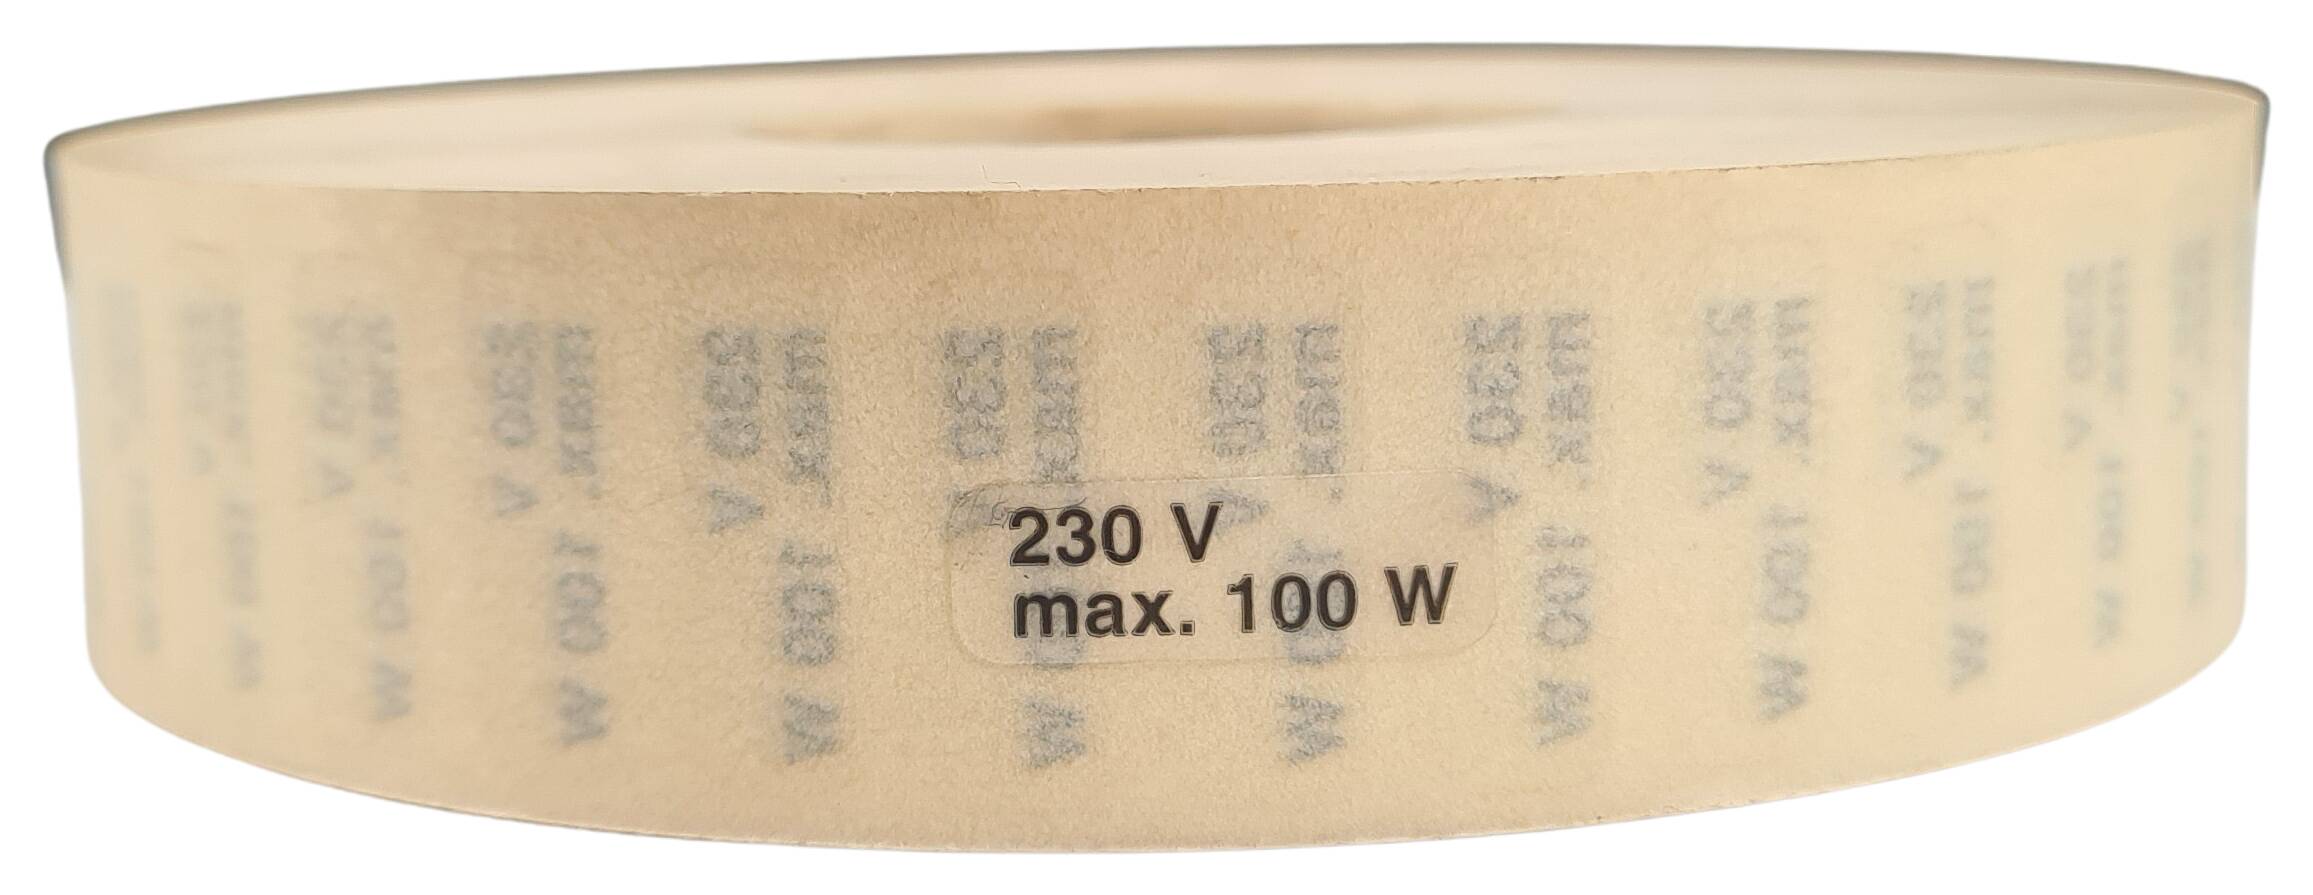 Etikett 230V max. 100W 21x7 mm transparent